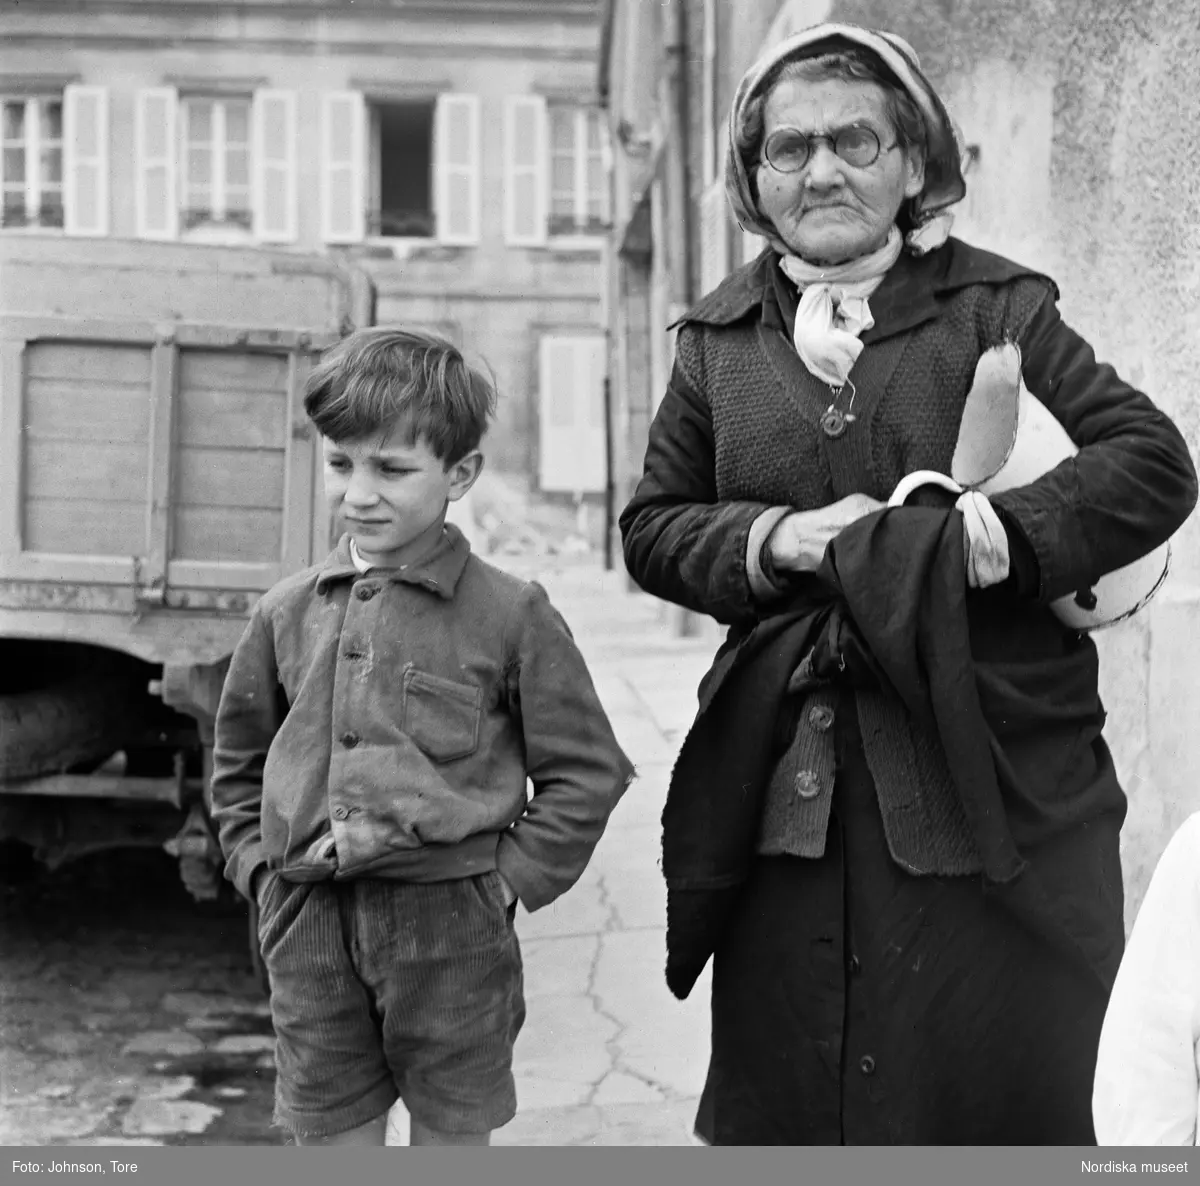 Auxerre, Bourgogne, Frankrike. Äldre kvinna och ung pojke på gata.